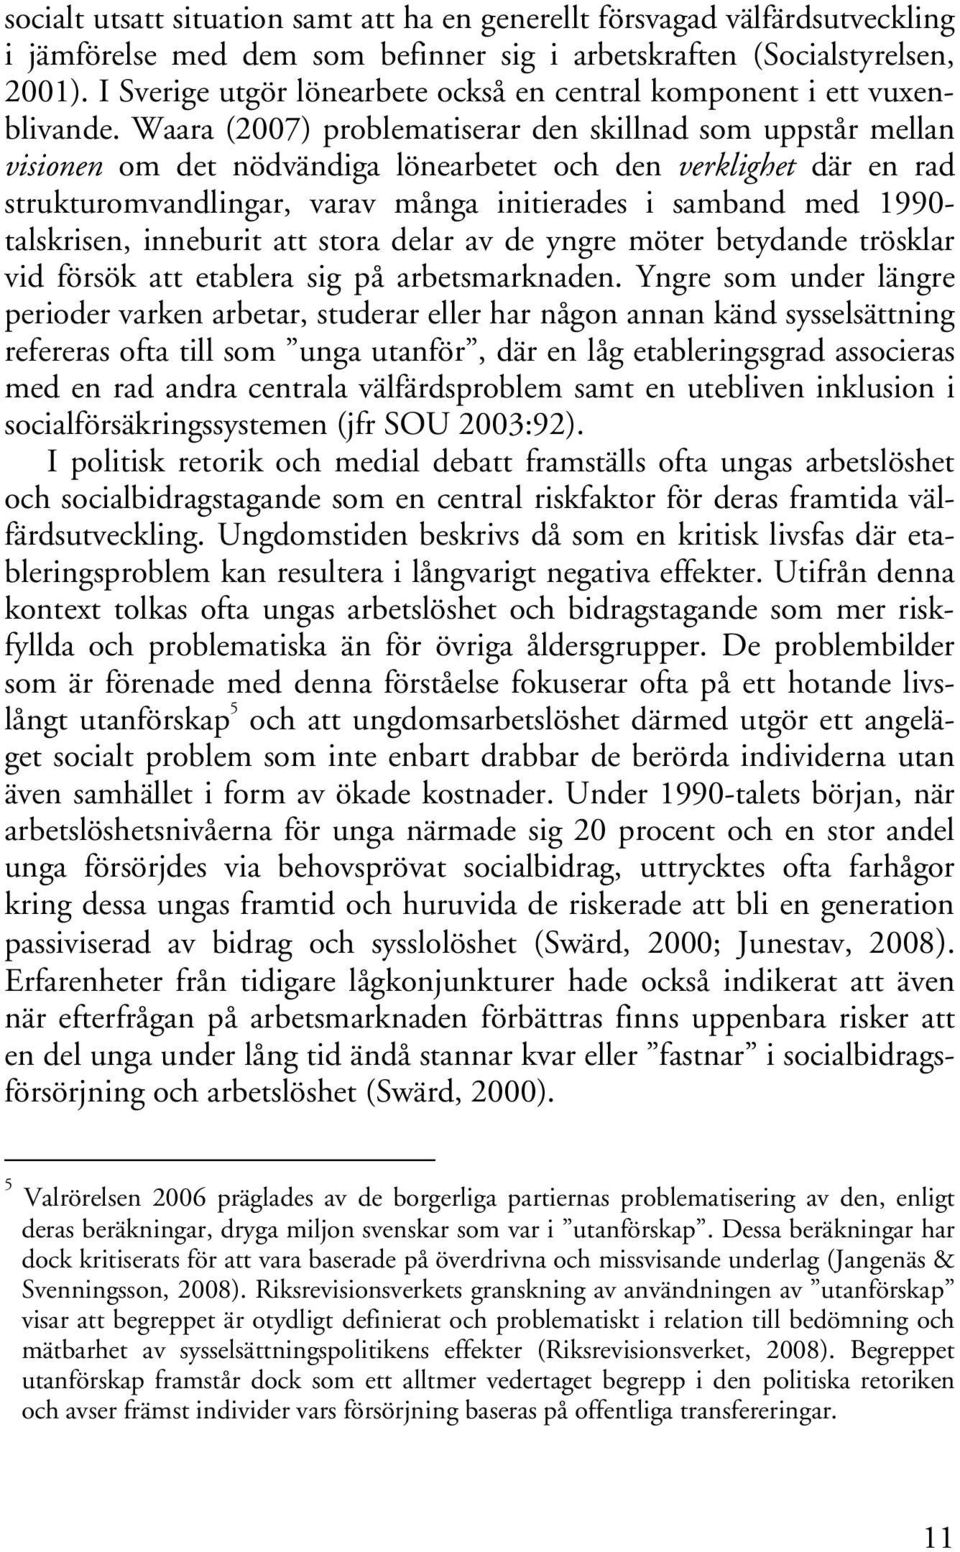 Waara (2007) problematiserar den skillnad som uppstår mellan visionen om det nödvändiga lönearbetet och den verklighet där en rad strukturomvandlingar, varav många initierades i samband med 1990-